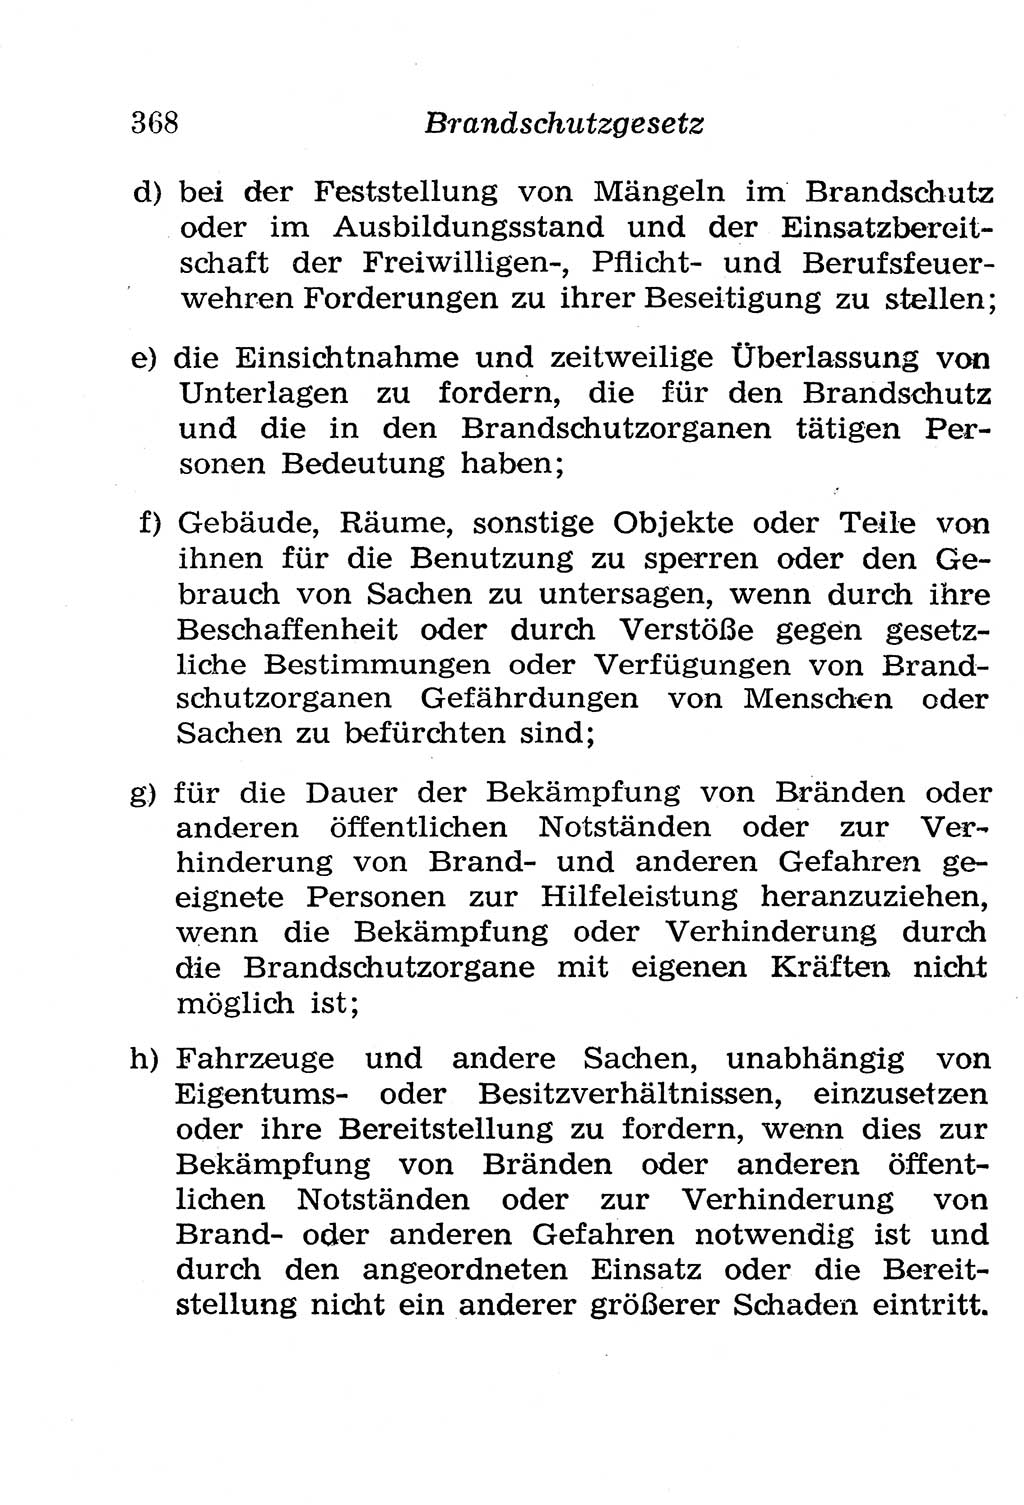 Strafgesetzbuch (StGB) und andere Strafgesetze [Deutsche Demokratische Republik (DDR)] 1958, Seite 368 (StGB Strafges. DDR 1958, S. 368)